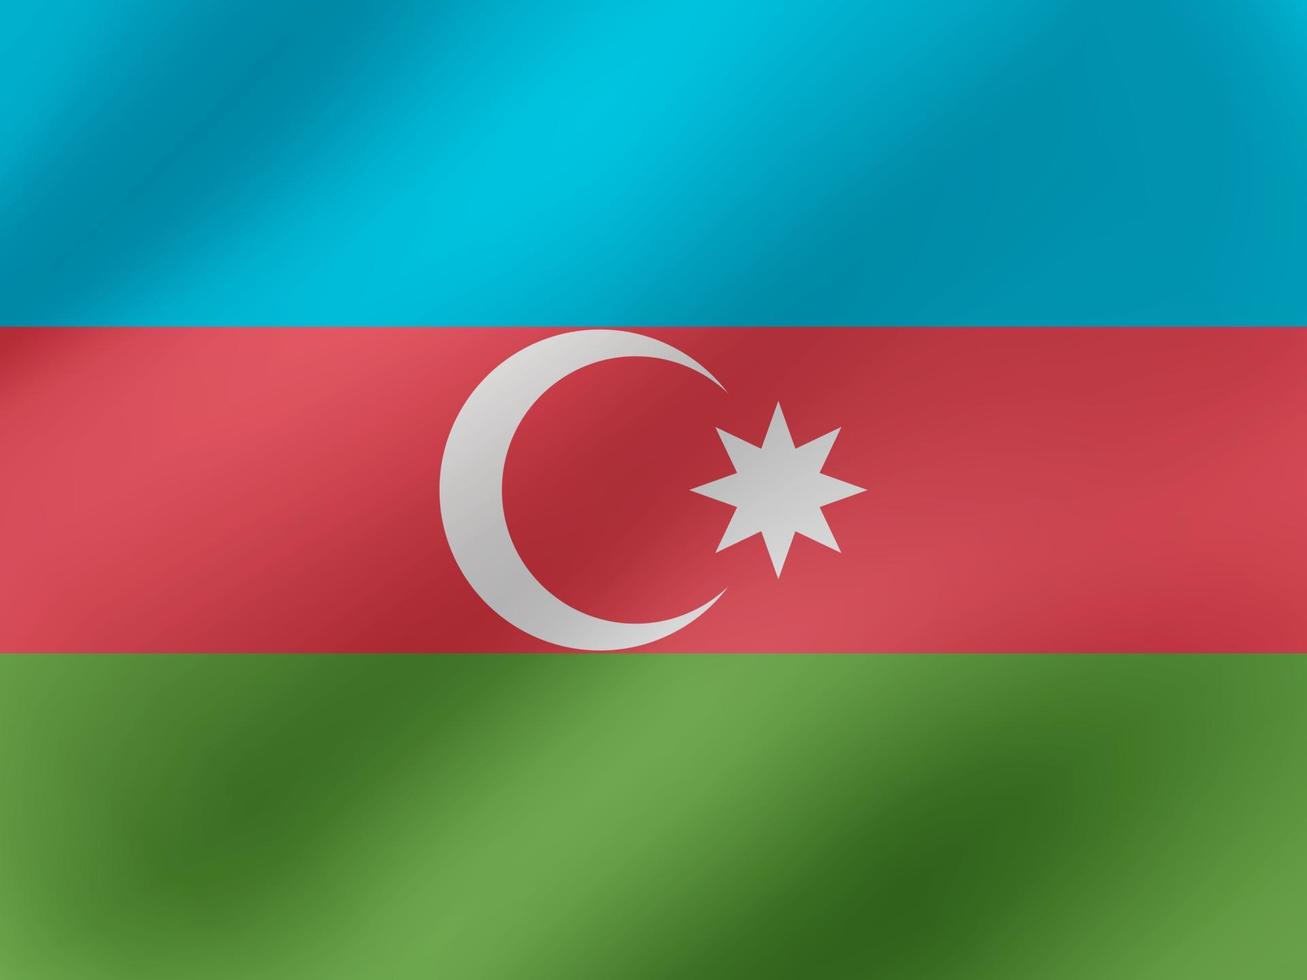 vektor realistische wellenförmige illustration des aserbaidschan flaggendesigns